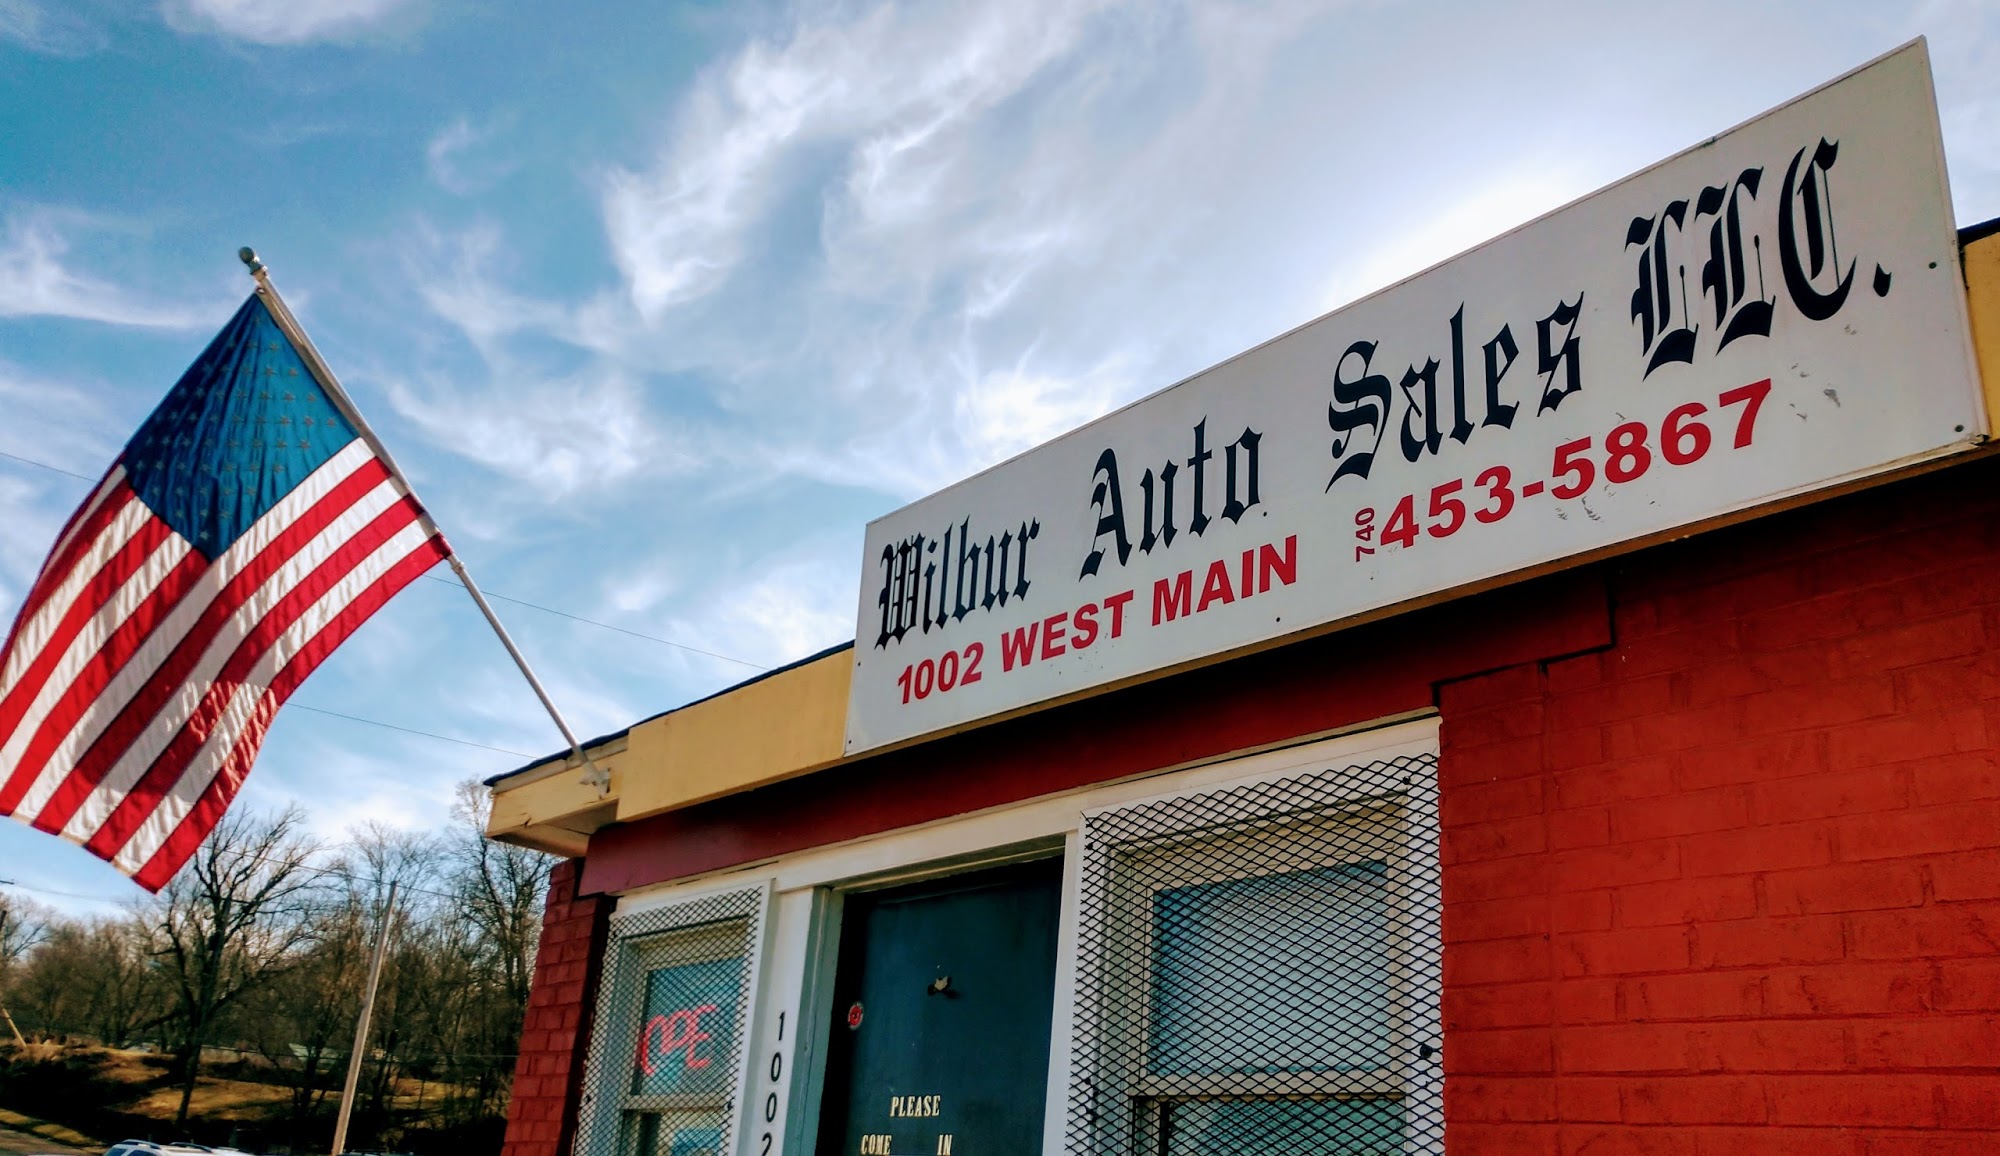 Wilbur Auto Sales